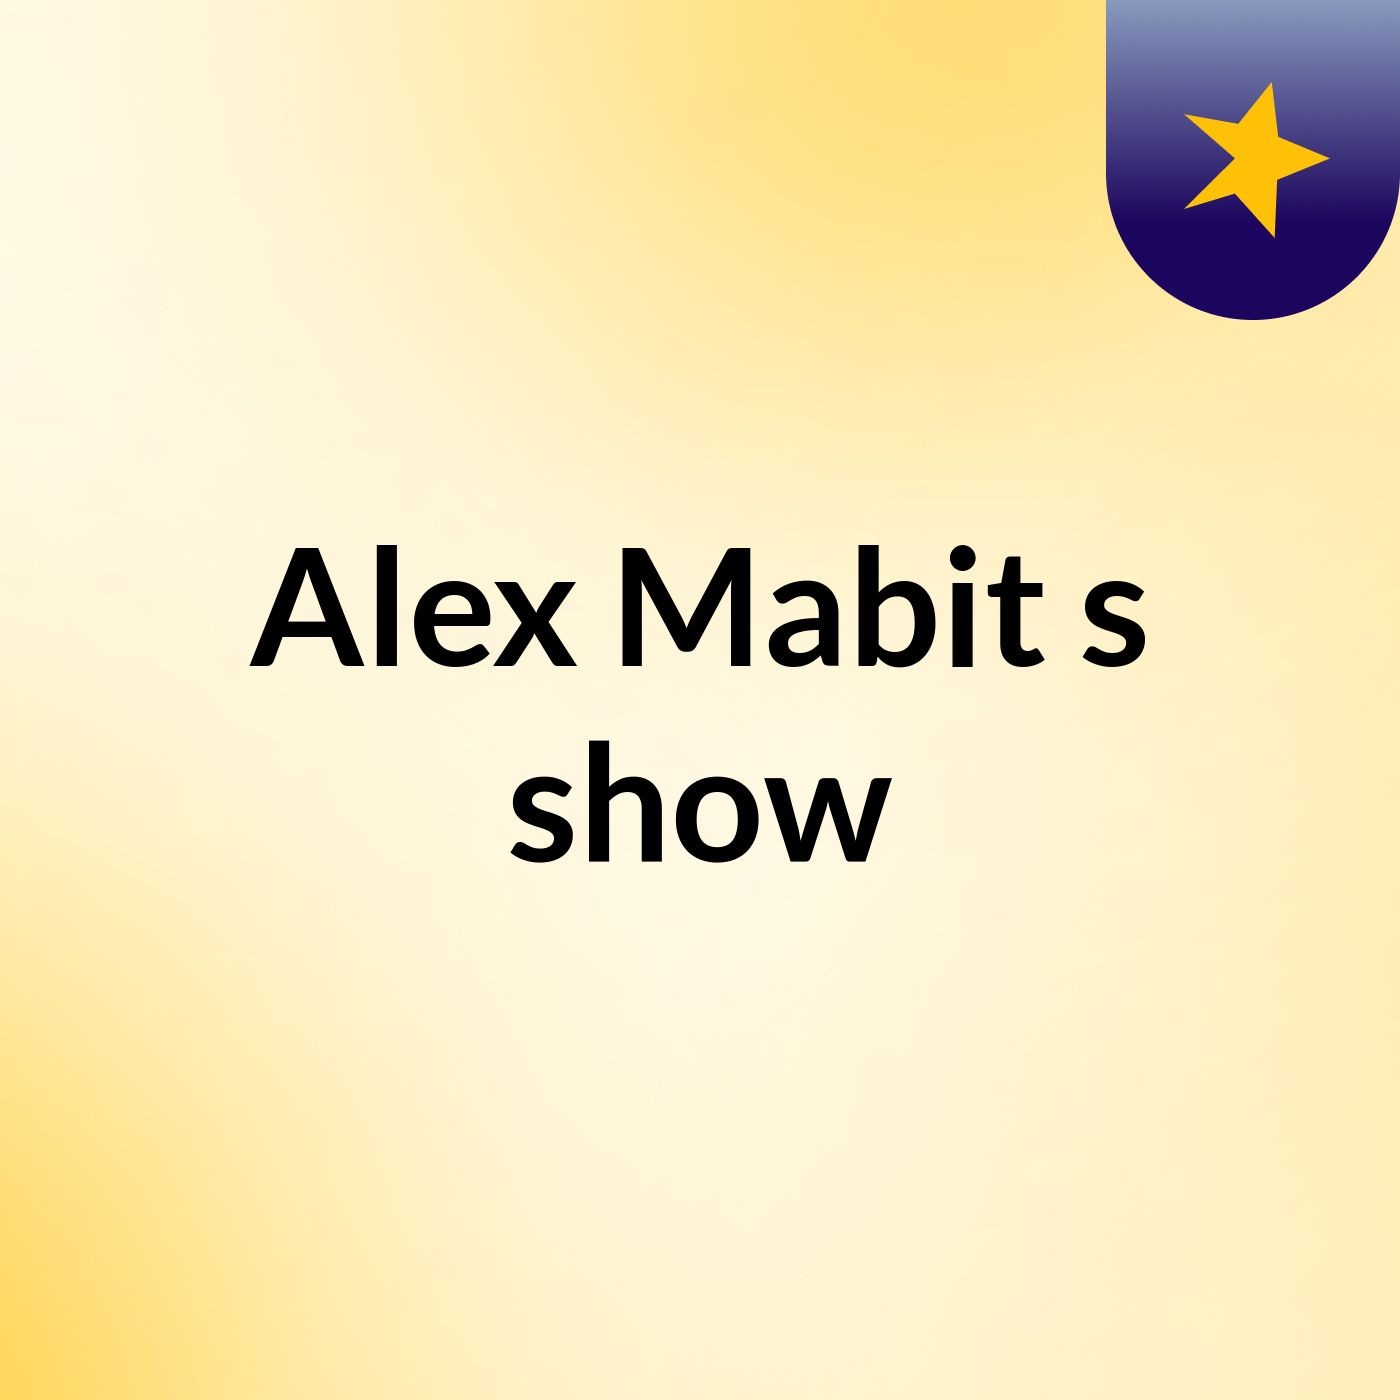 Alex Mabit's show